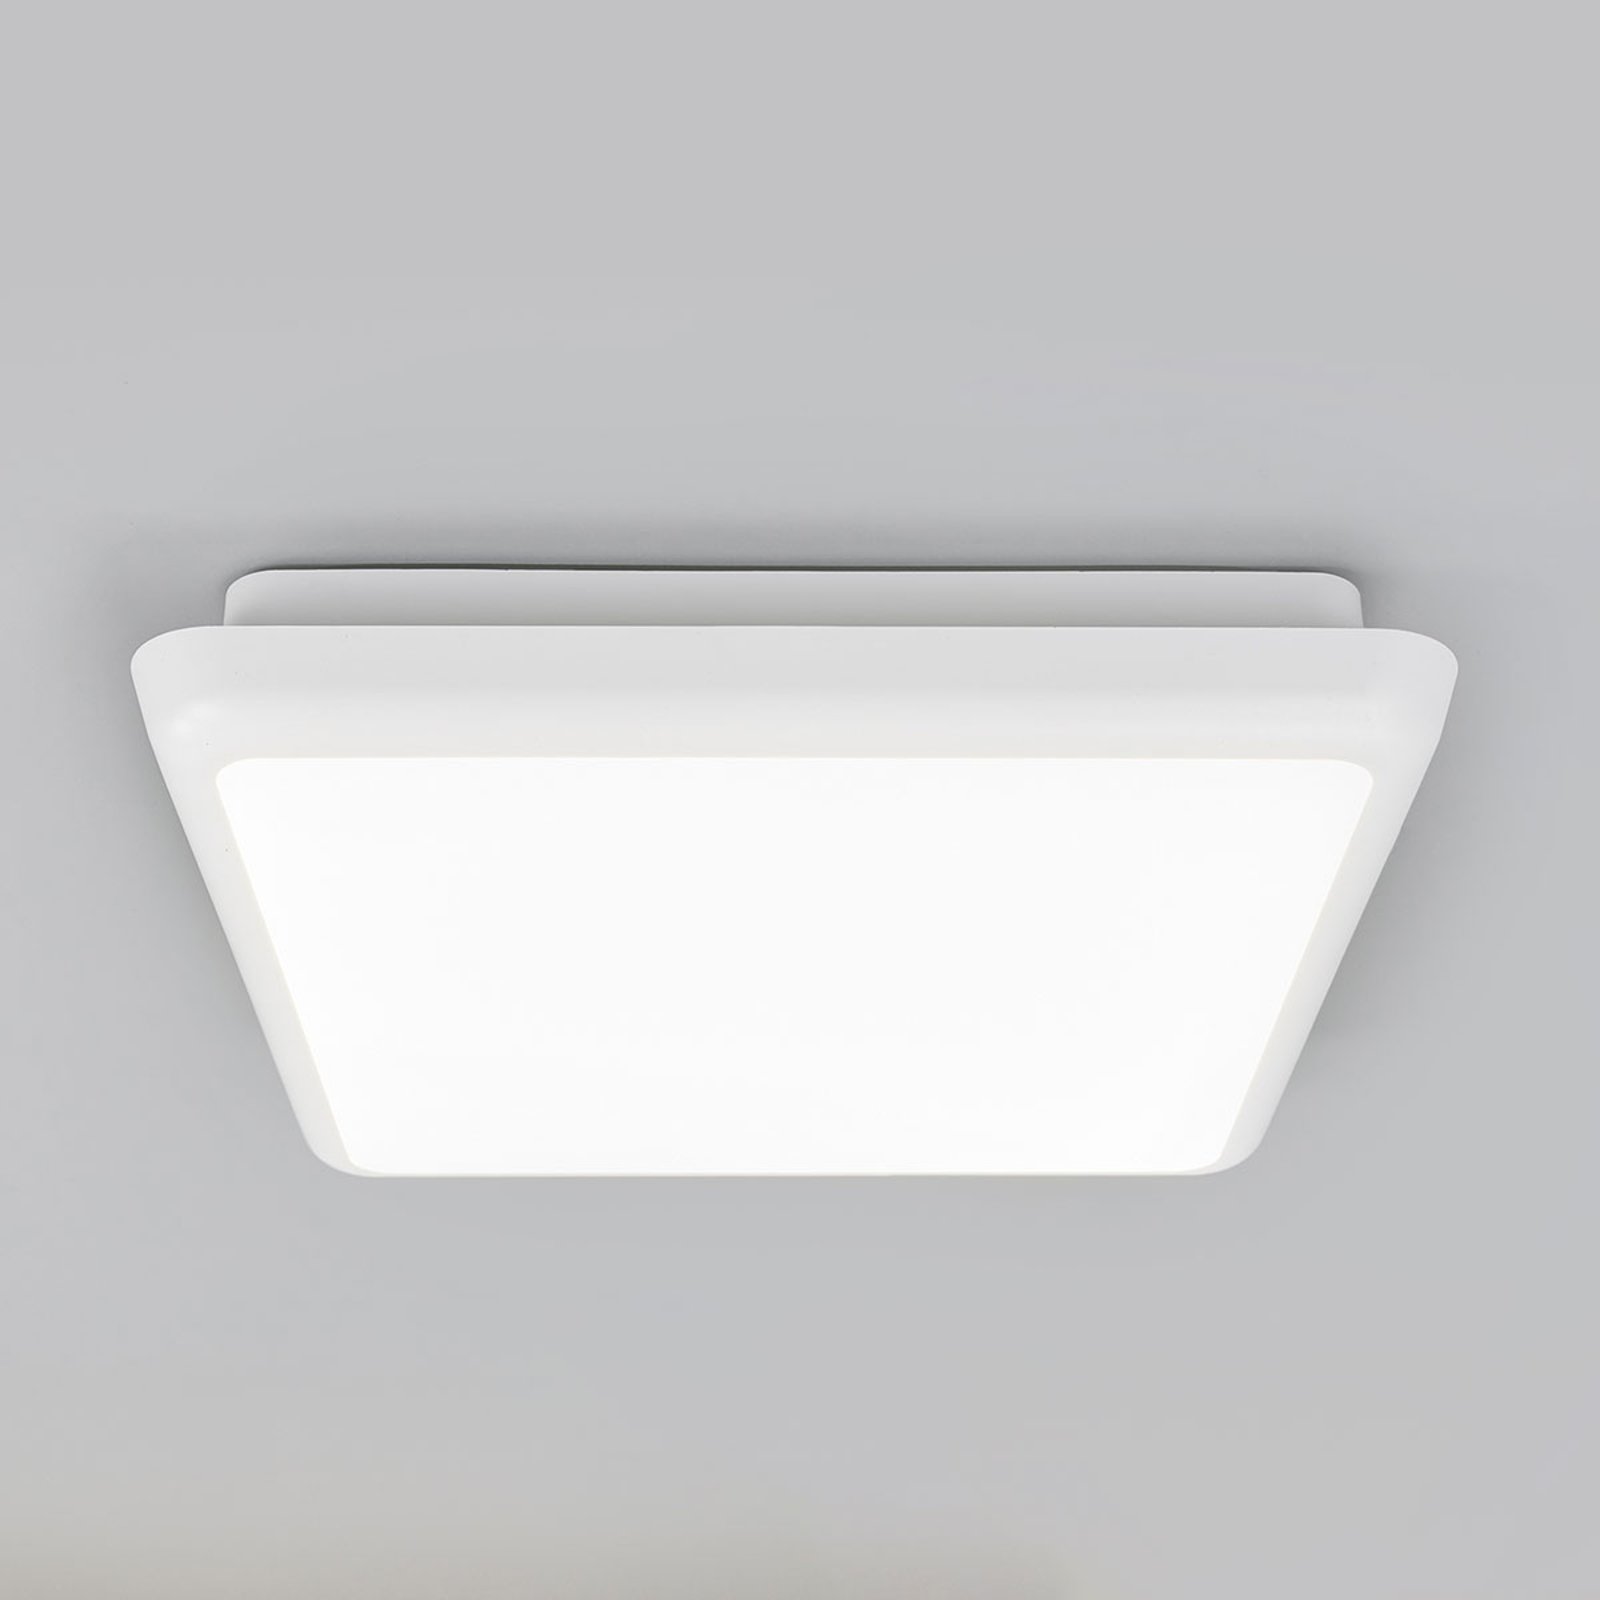 LED ceiling light Augustin, angular, 25 x 25 cm